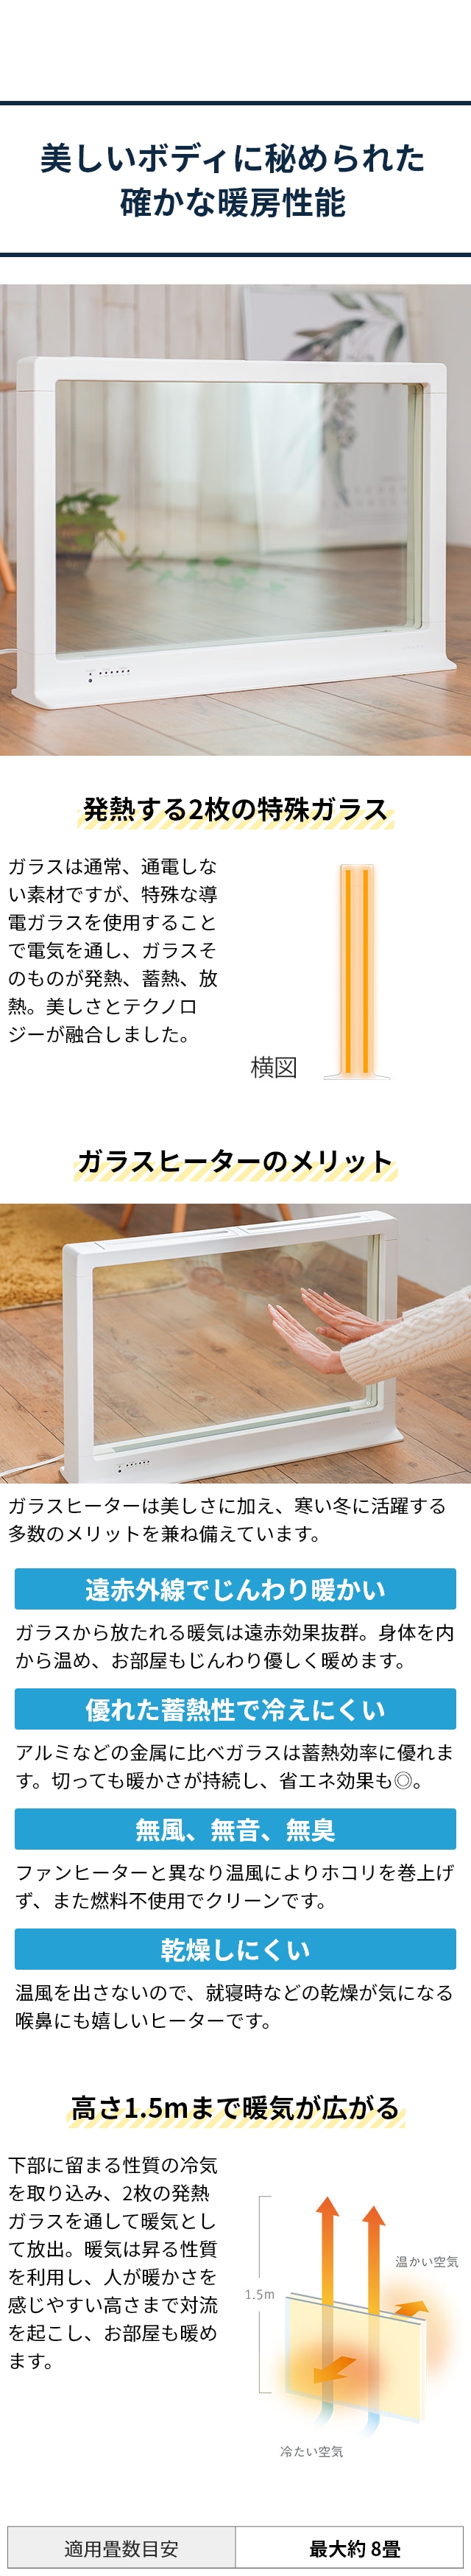 SONOBI(ソノビ) ダブルグラスヒーター(Double Glass Heater) DGH-01：美しいボディに秘められた確かな暖房性能